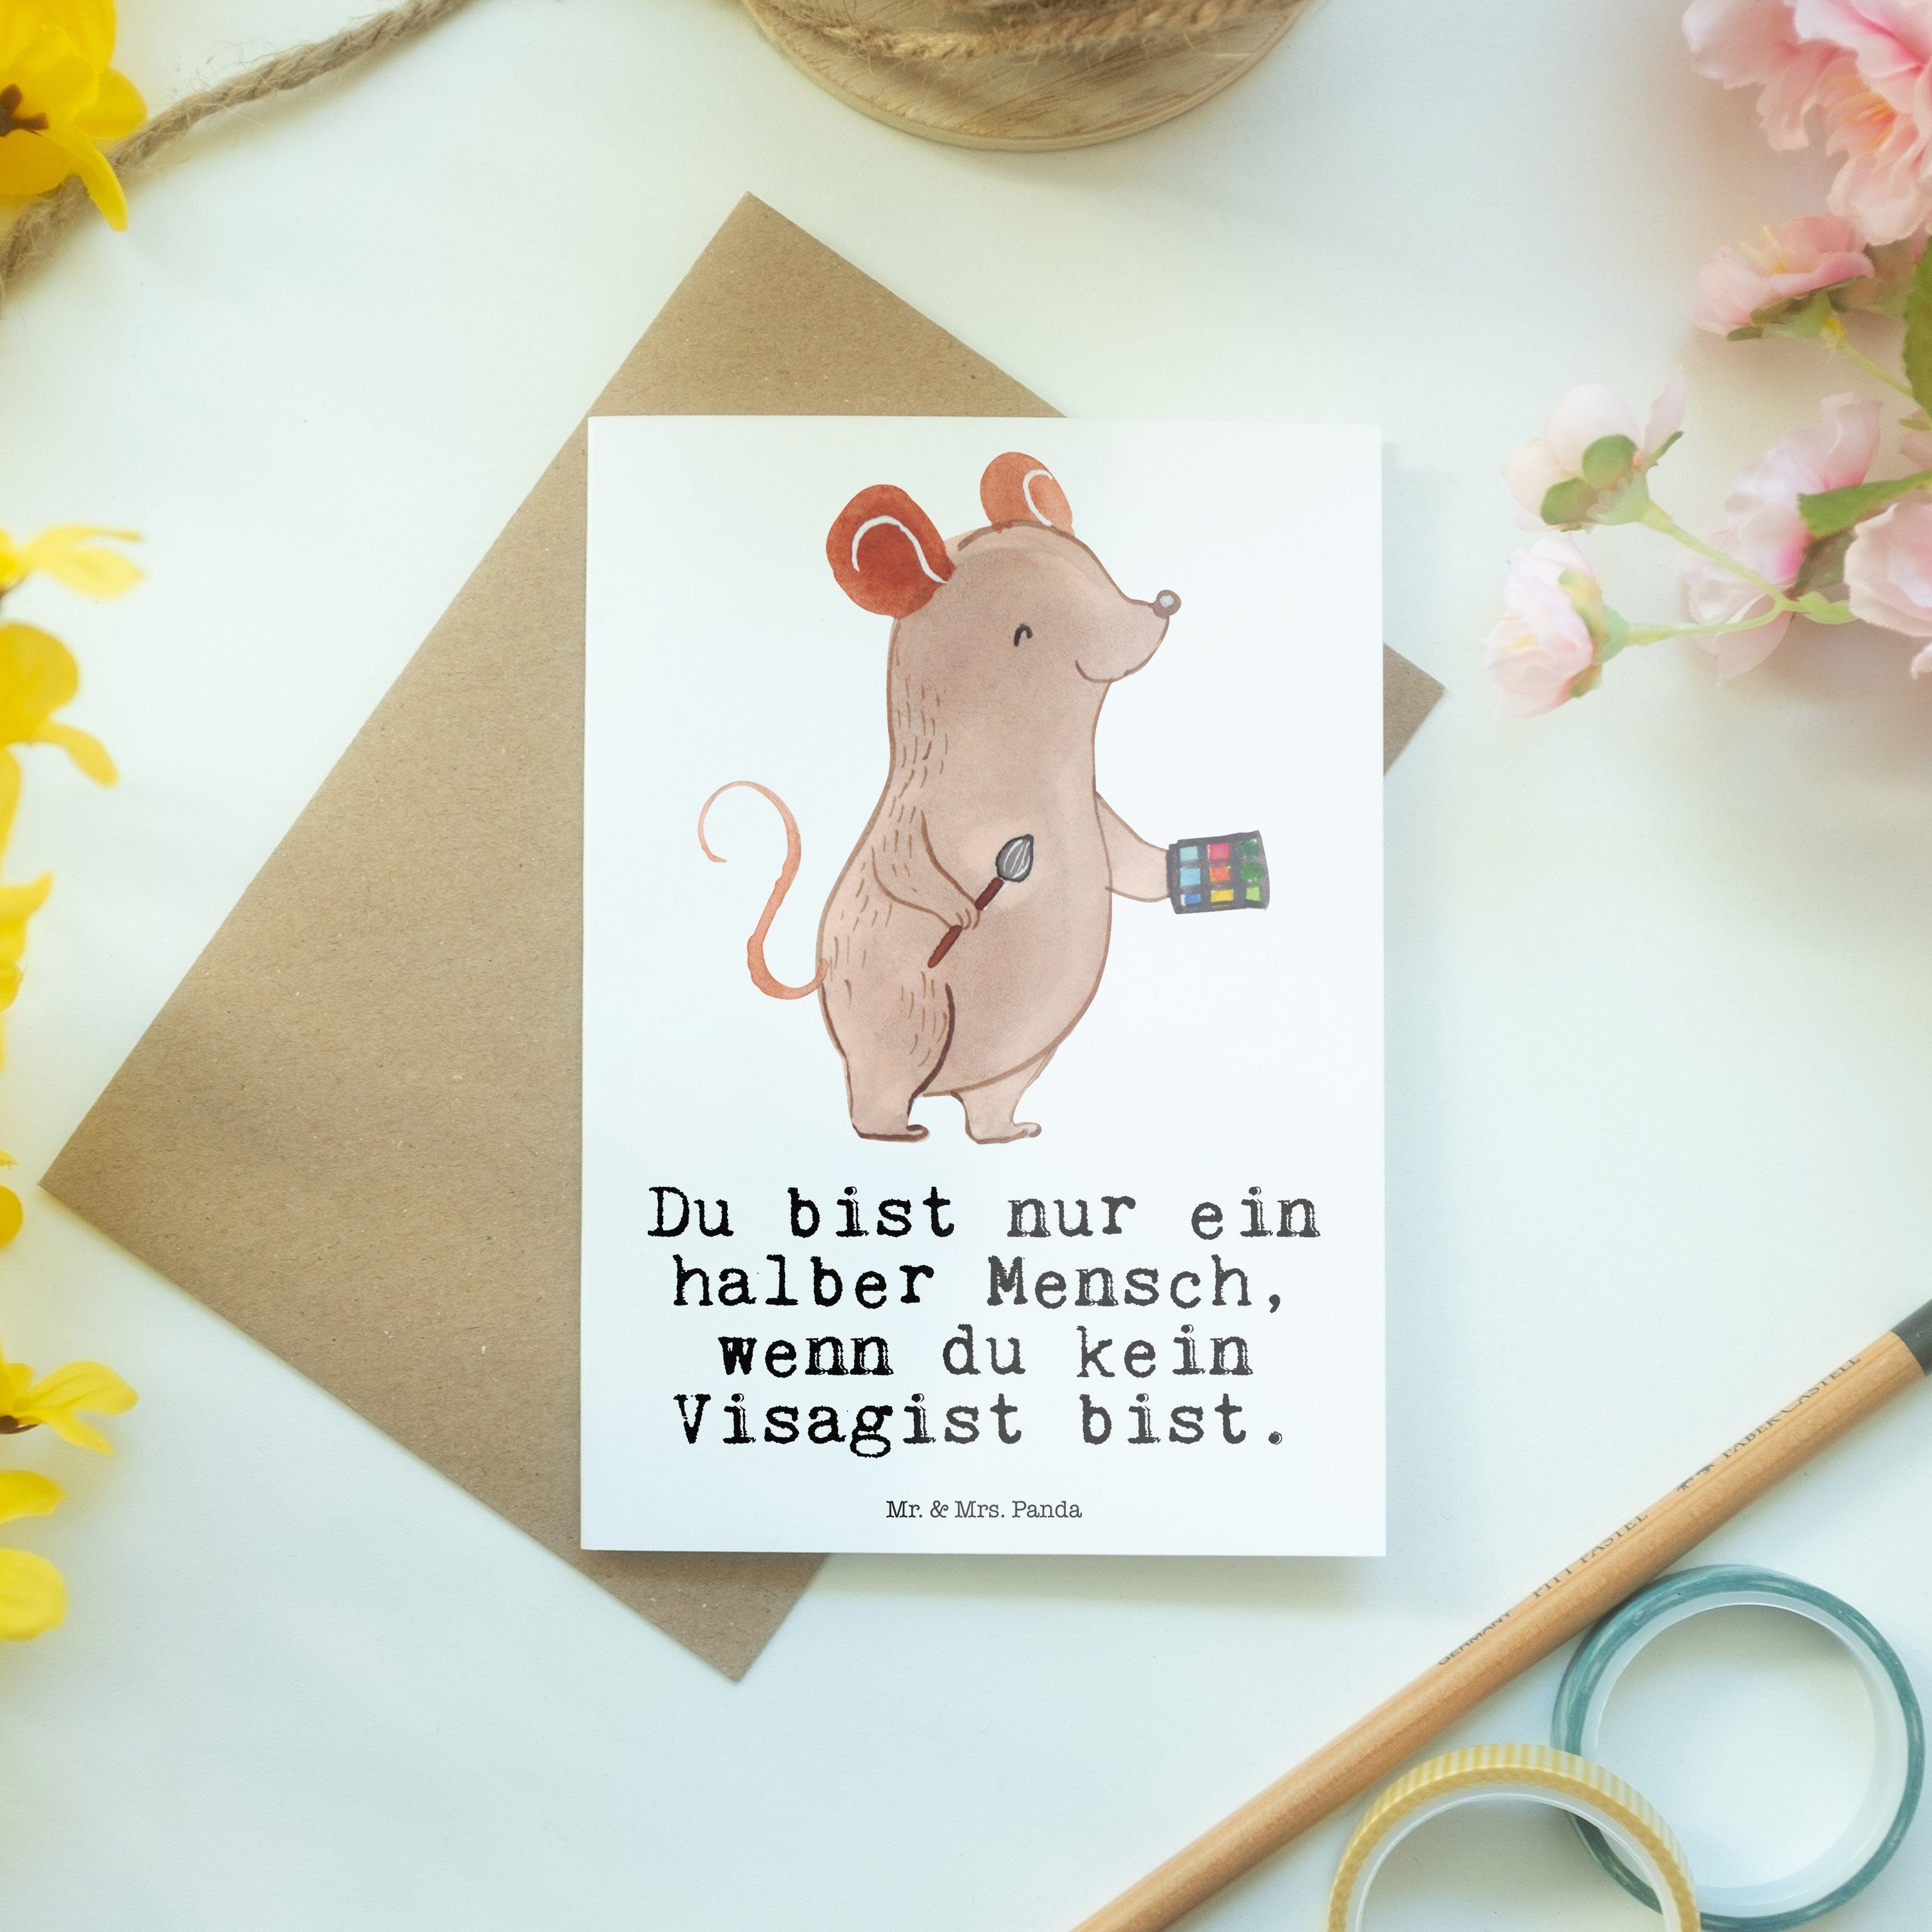 Mr. & Mrs. Panda Grußkarte Dankeschön, - Geschenk, Visagist Kl Herz mit - Weiß Geburtstagskarte